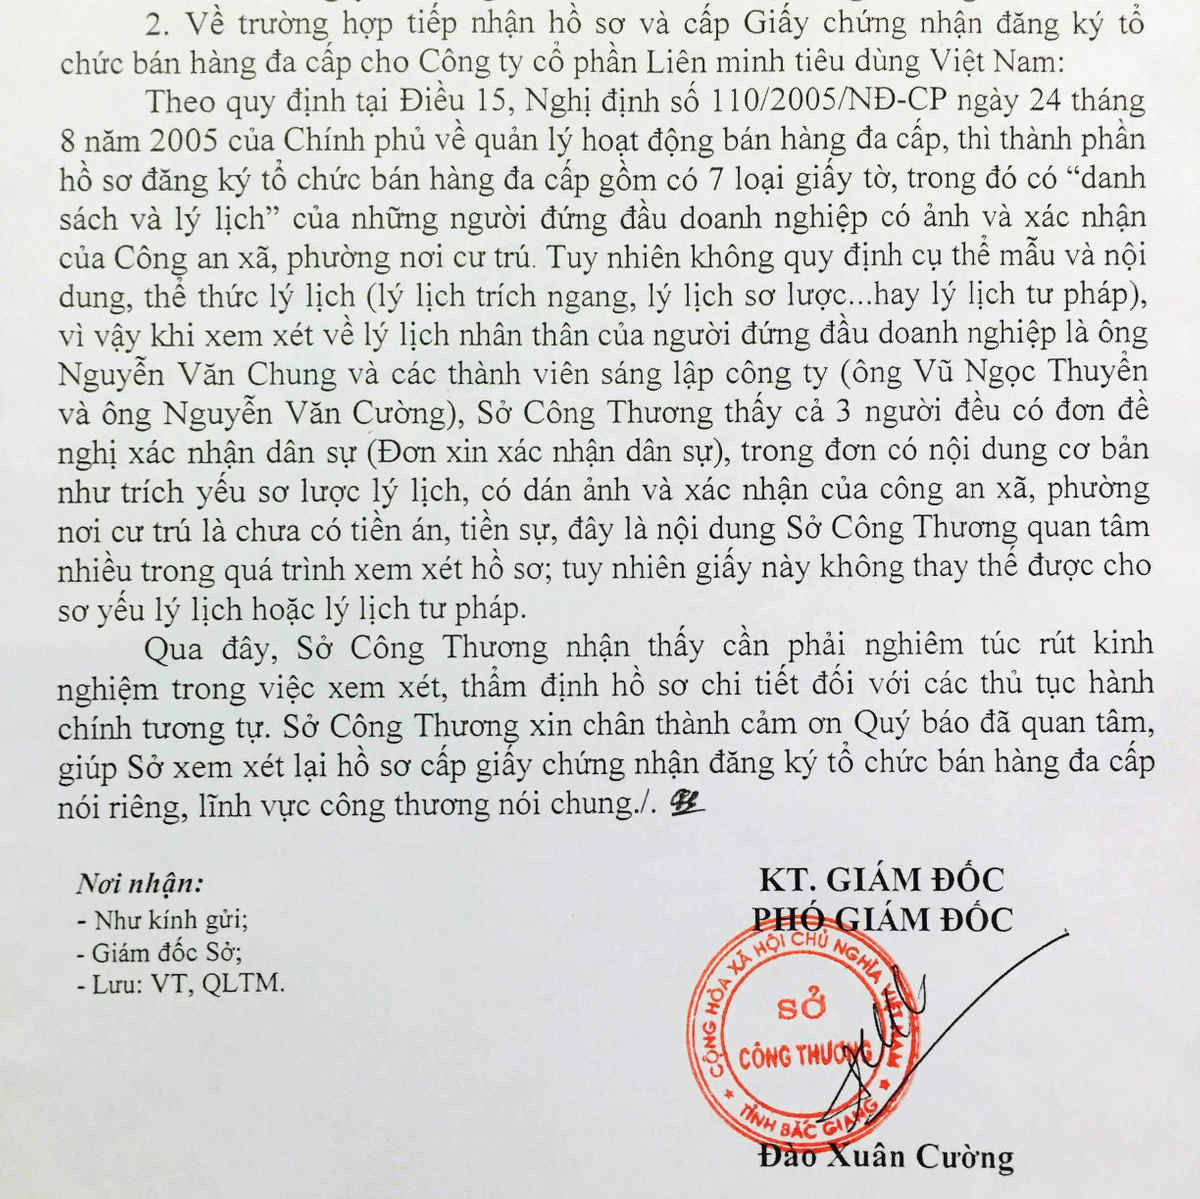 Sở Công Thương Bắc Giang thừa nhận đã sai trong quá trình xét duyệt và cấp giấy phép kinh doanh đa cấp cho Cty Vietnet nhưng chỉ xin... rút kinh nghiệm